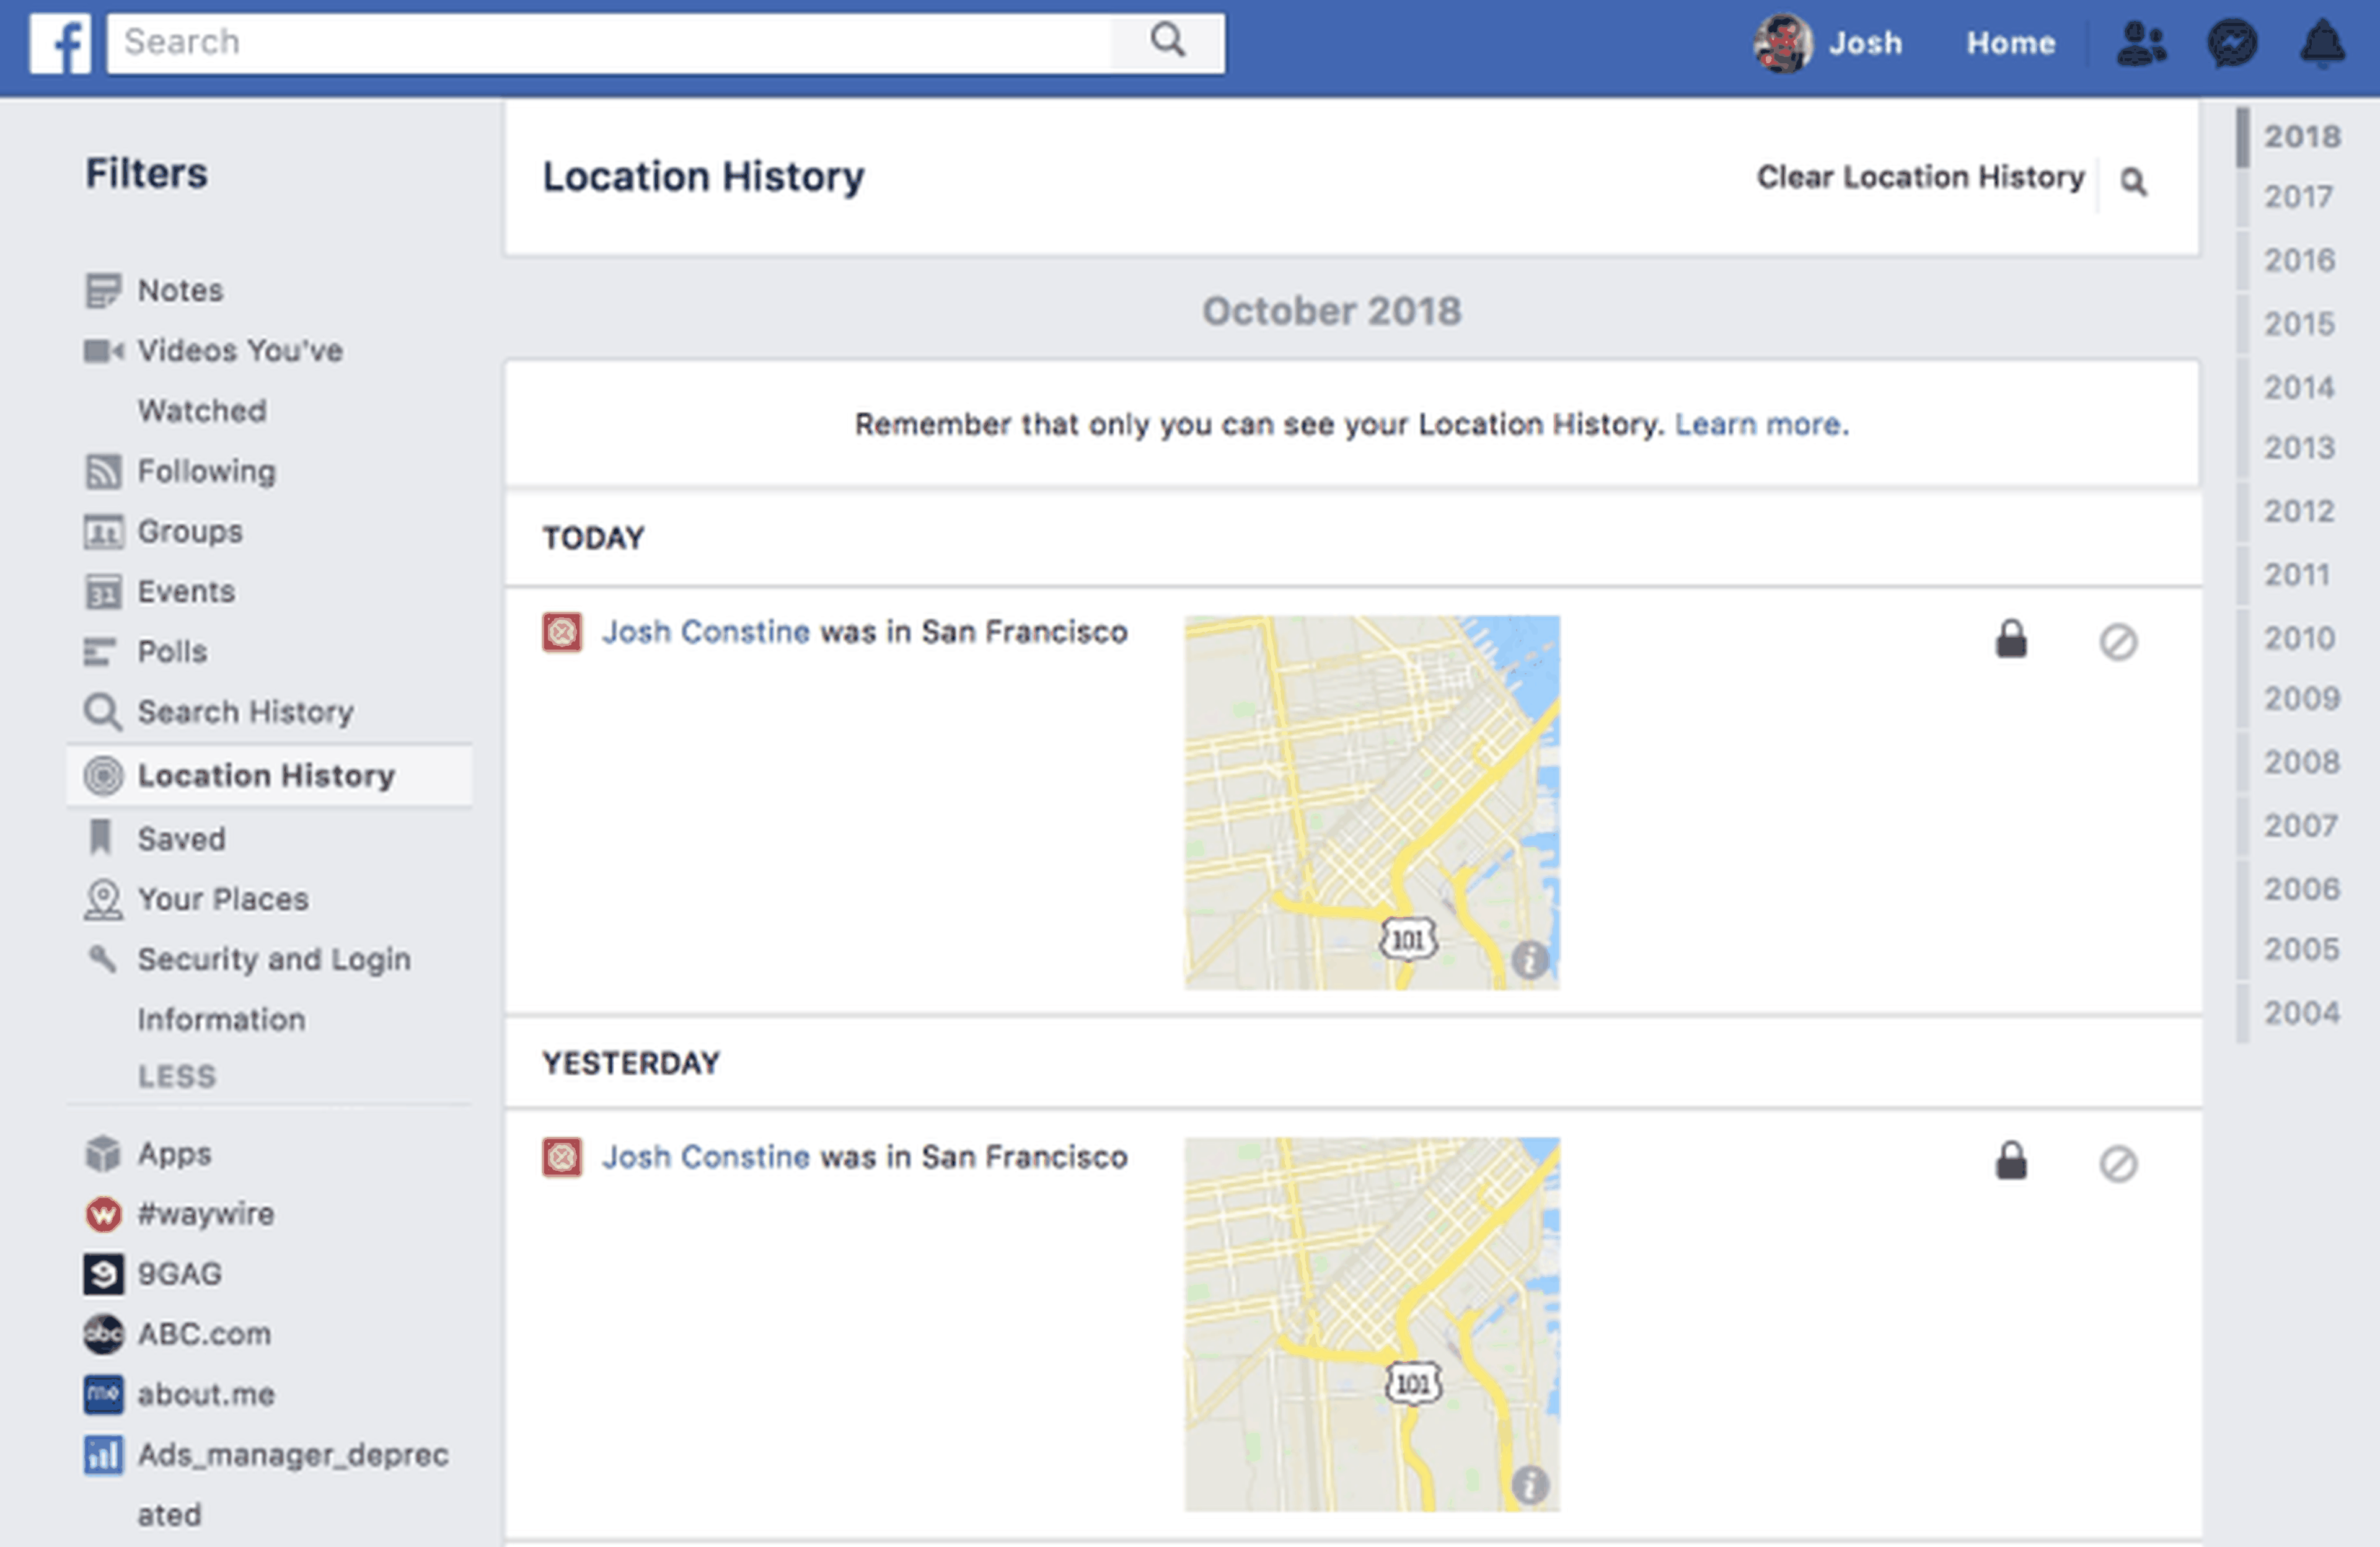 Captura de la beta de Instagram en la que se muestra cómo comparte información de la localización del usuario con Facebook